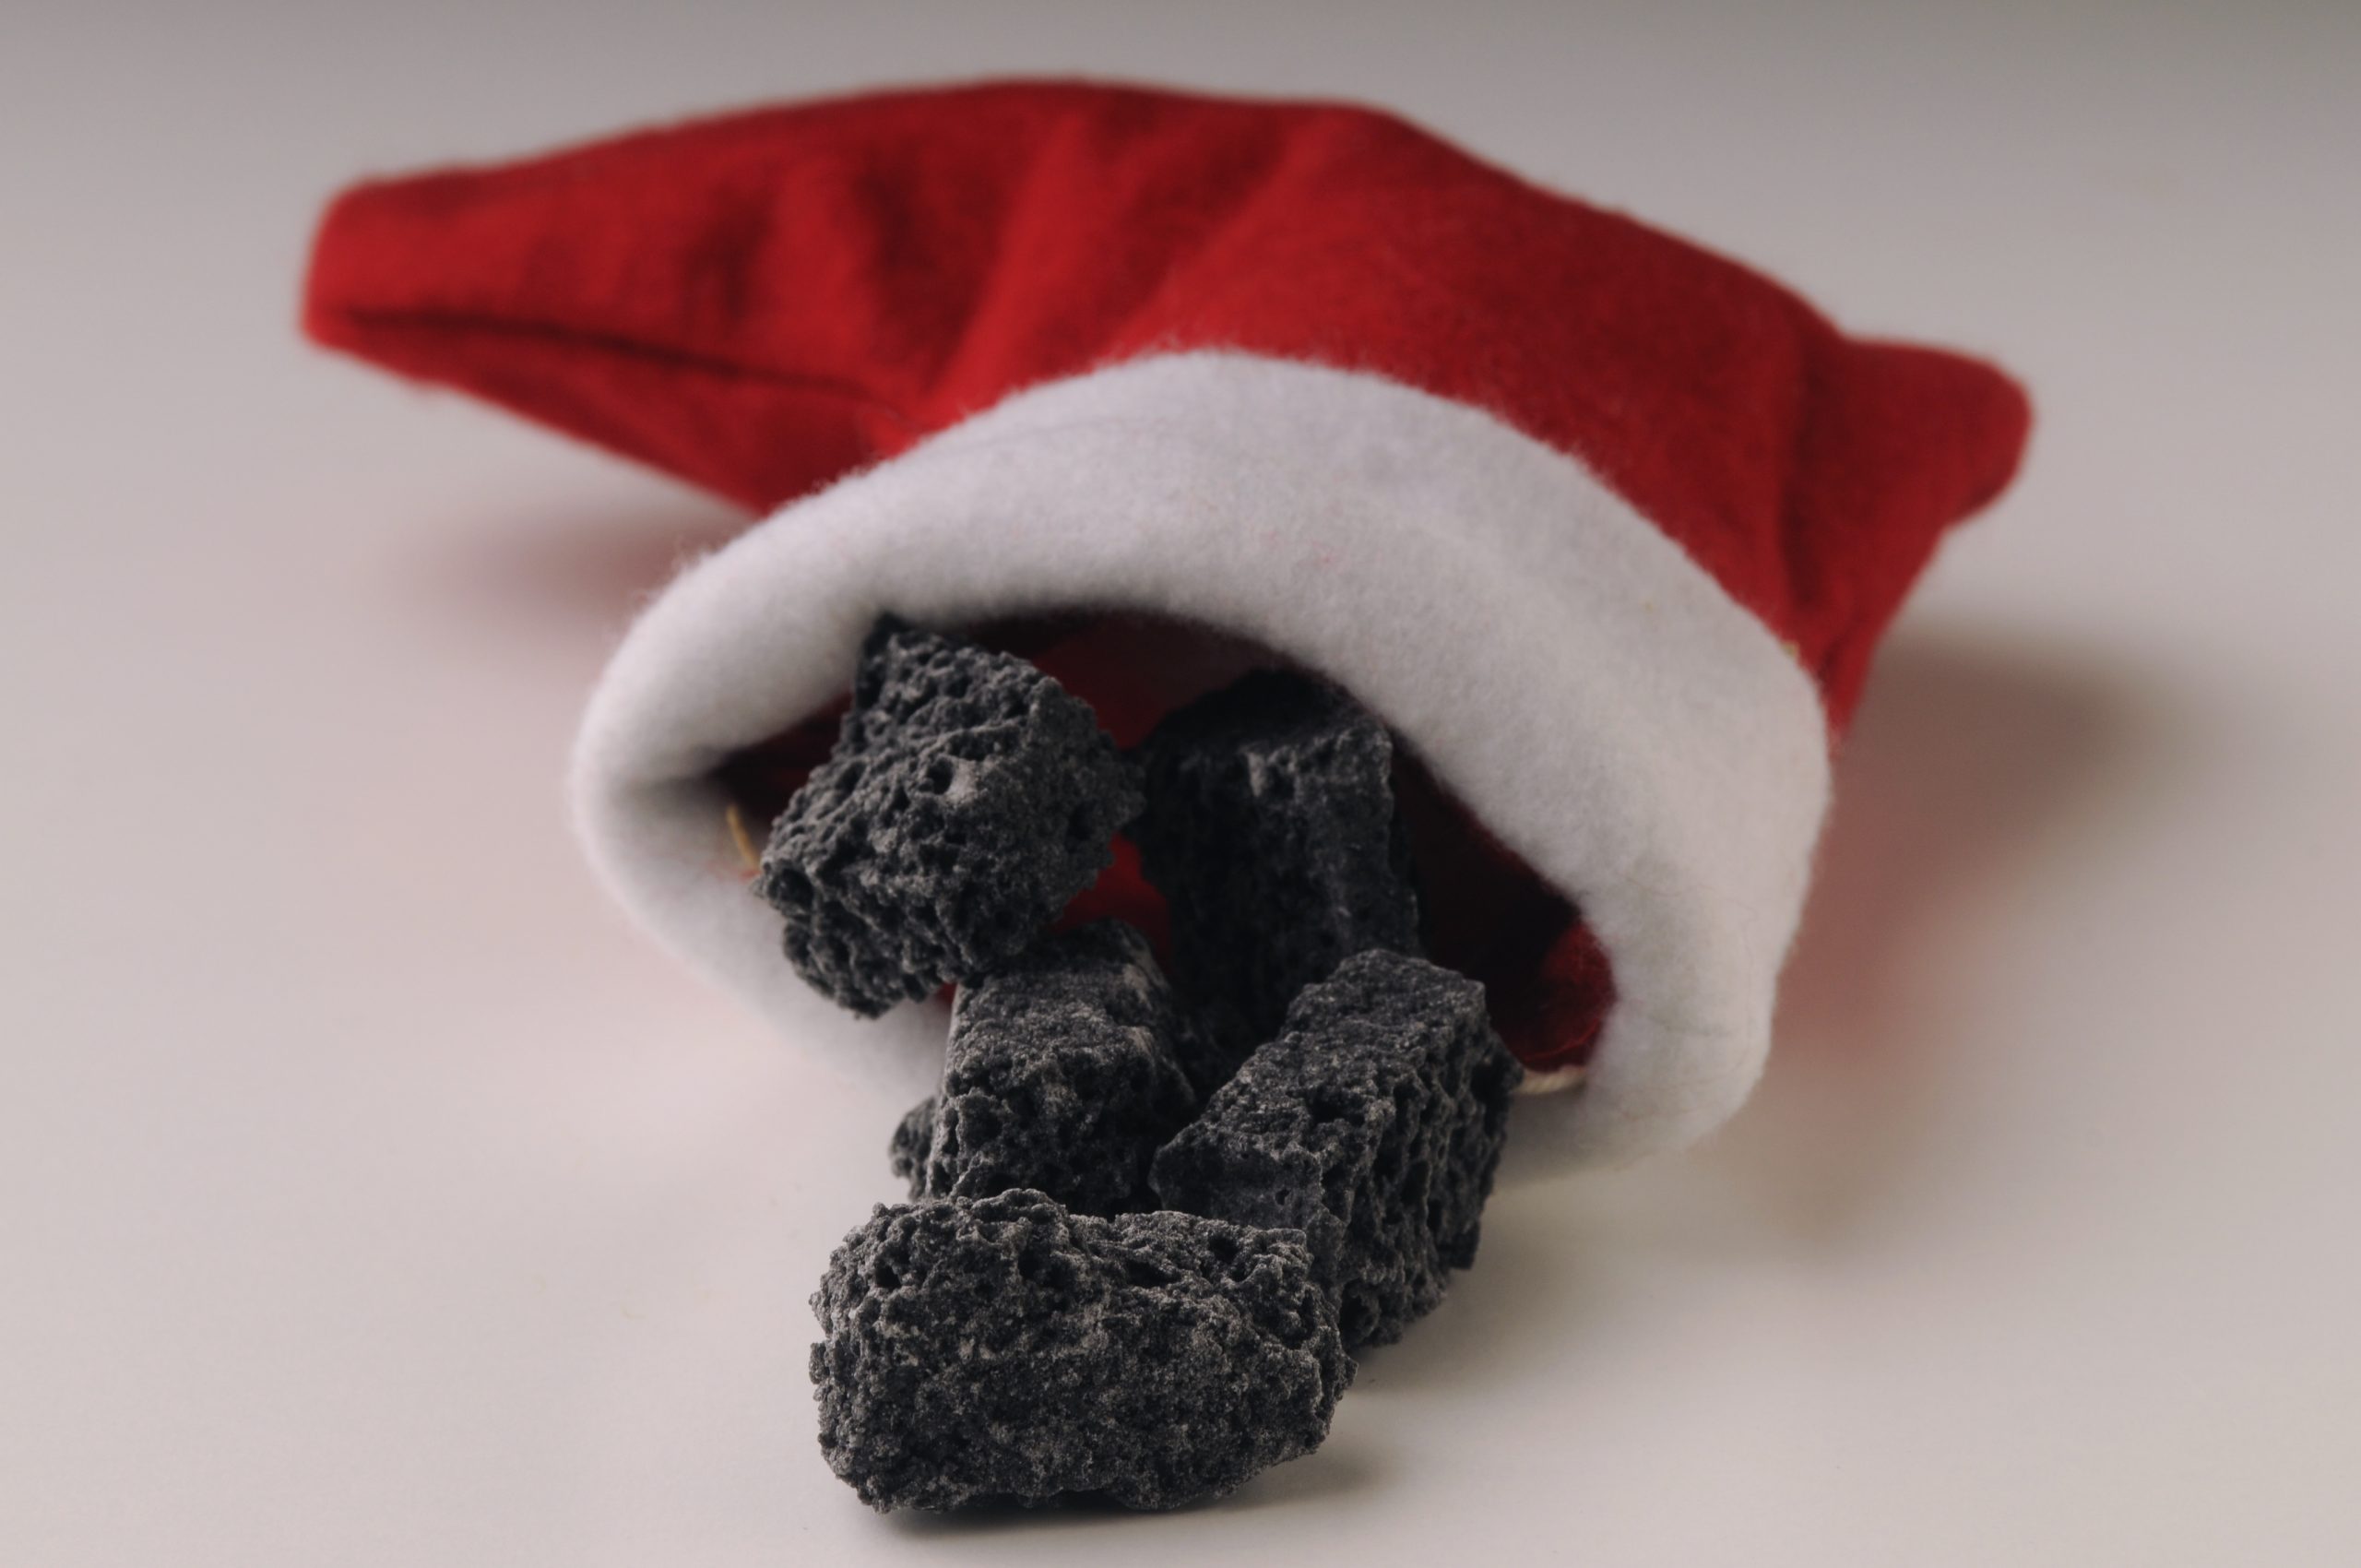 Coal in stocking